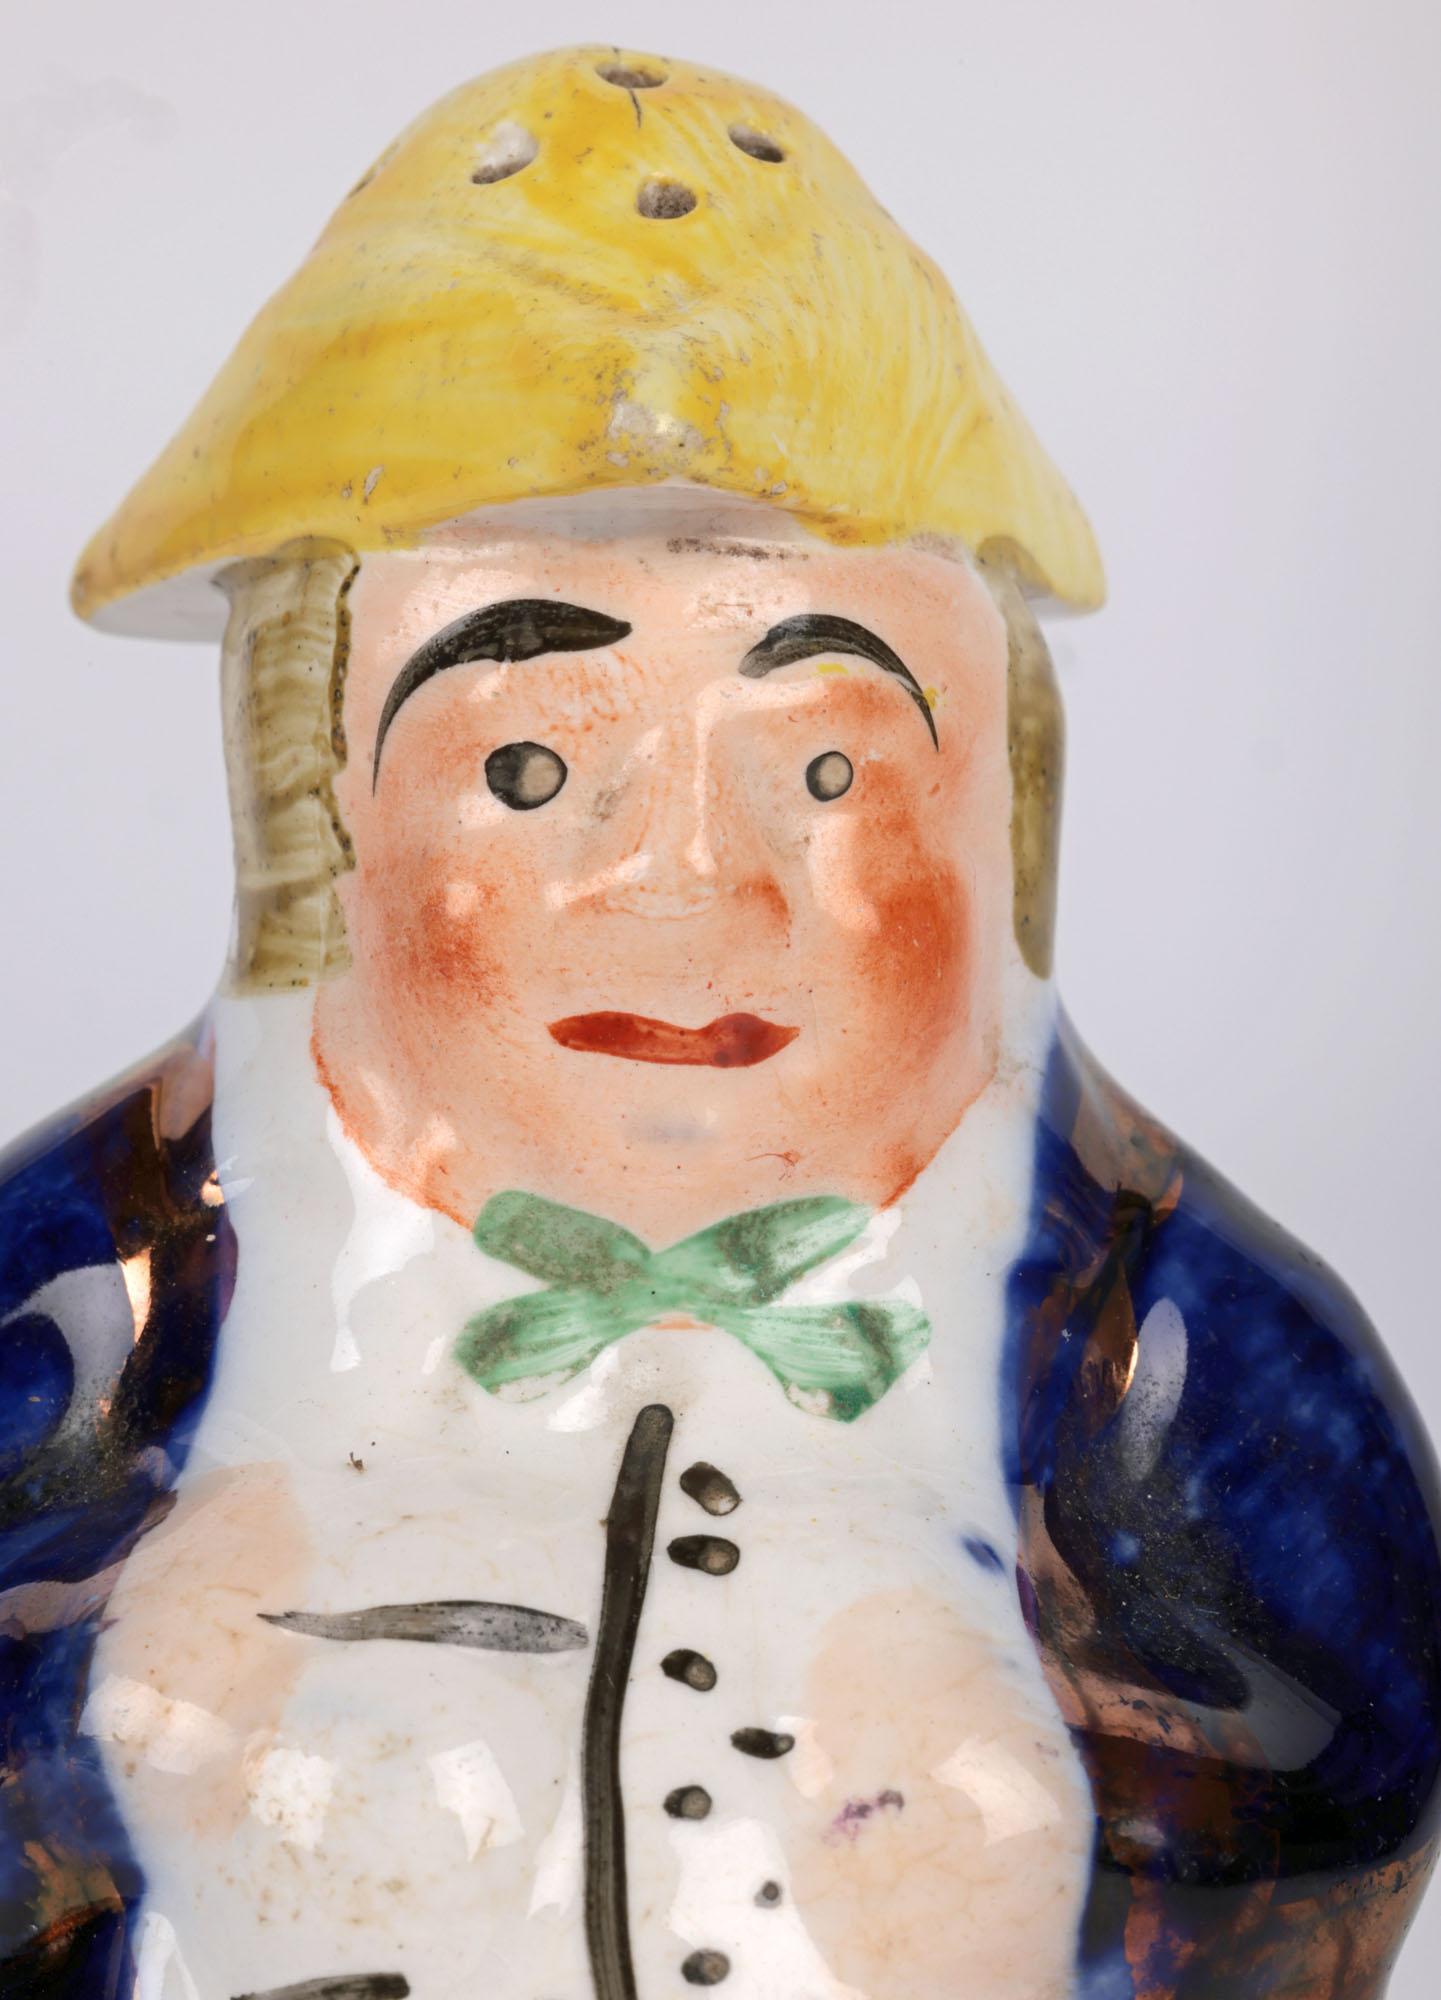 Eine reizvolle Neuheit antike englische Keramik Figur eines Mannes pounce oder Pfeffer Topf aus Staffordshire und aus dem 19. Jahrhundert. Die Töpferfigur steht erhöht auf einem runden Sockel und stellt einen kräftigen Mann in zeitgenössischer